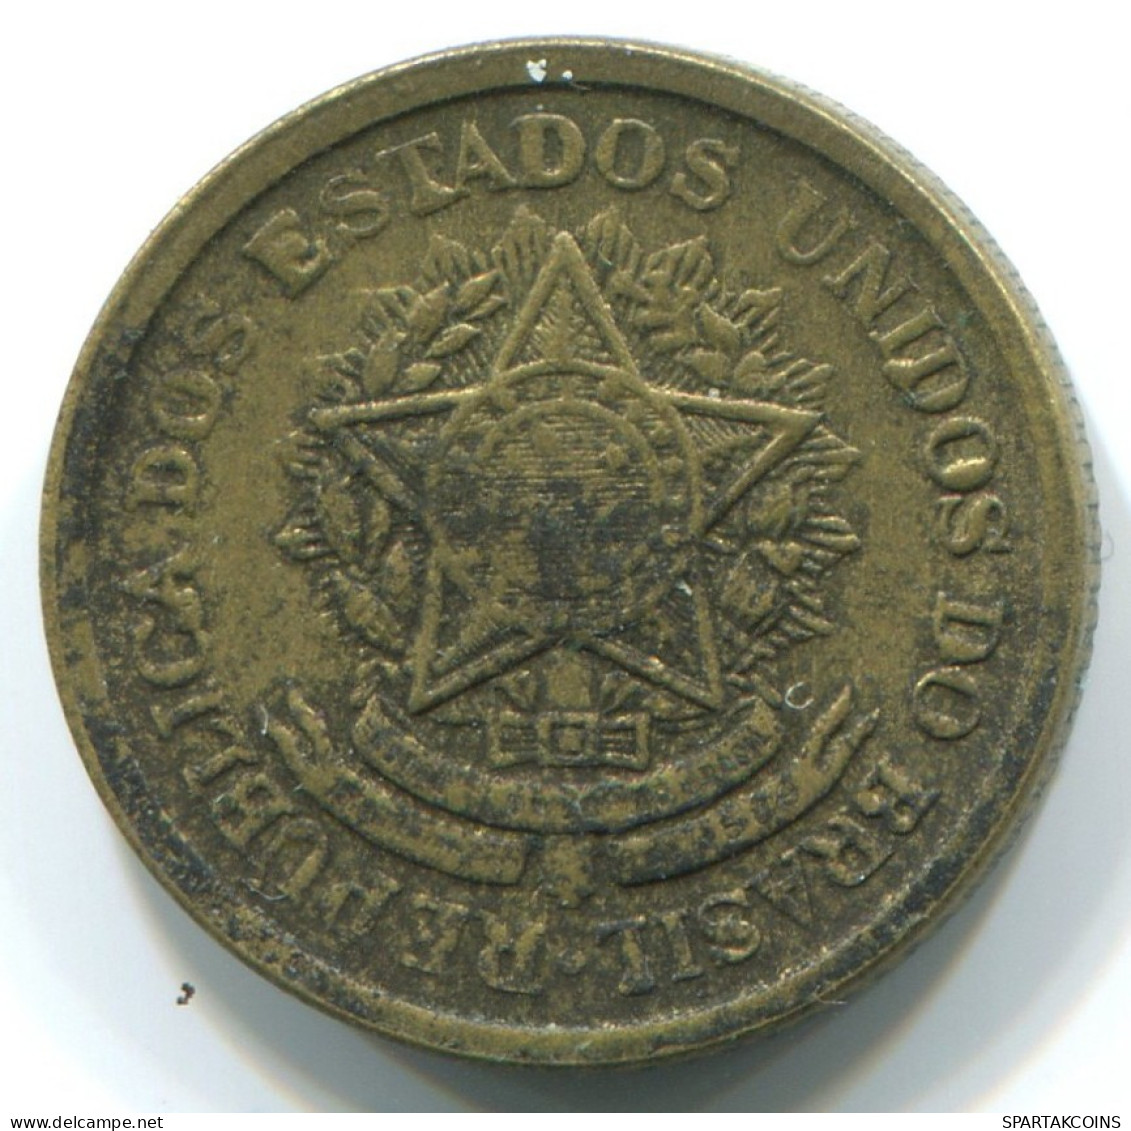 50 CENTAVOS 1956 BRAZIL Coin #WW1156.U.A - Brazil